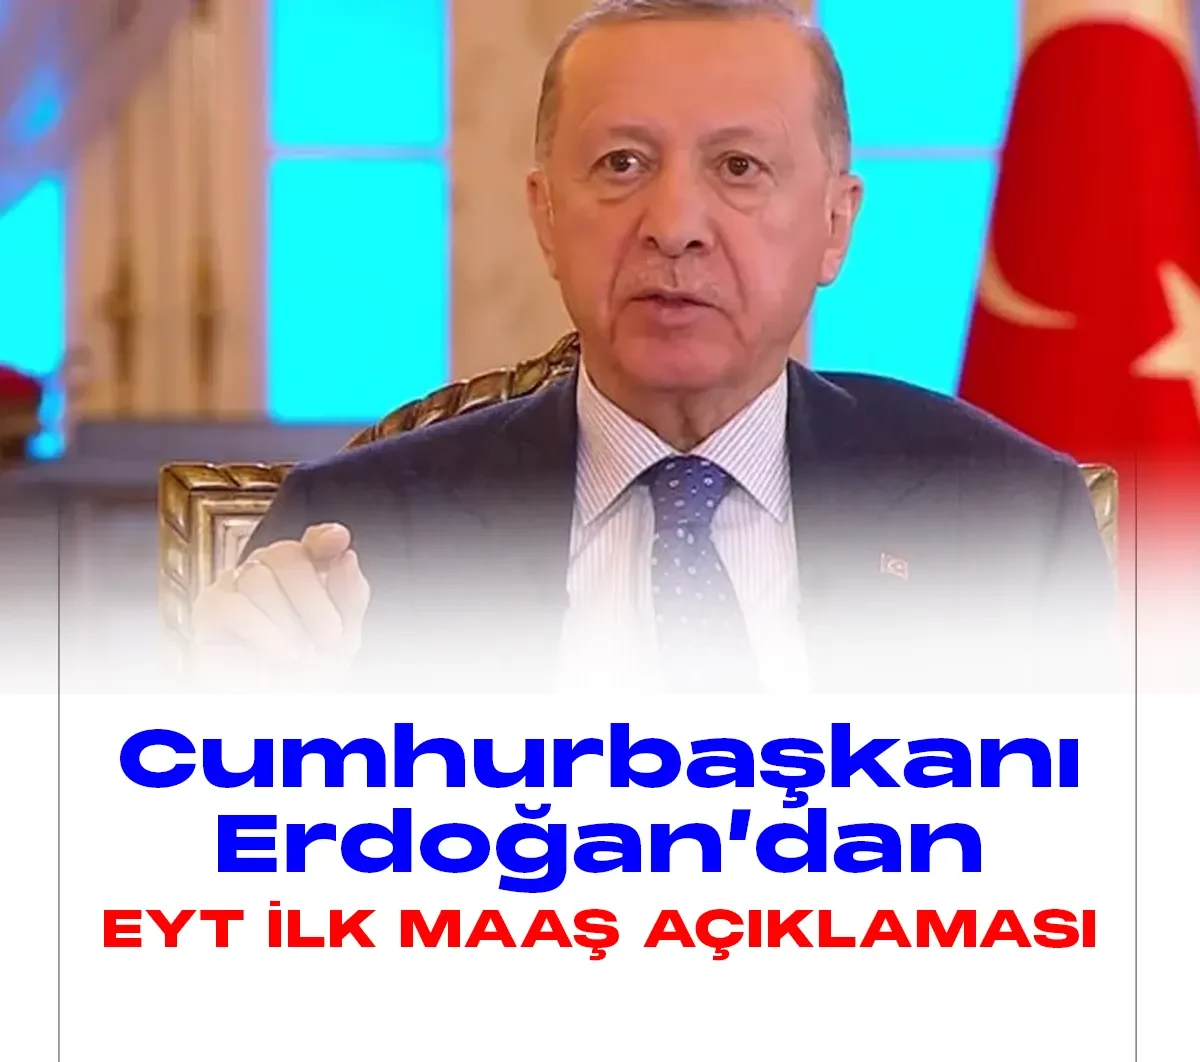 Cumhurbaşkanı Recep Tayyip Erdoğan 2 milyon 250 bin vatandaşı doğrudan ilgililendiren EYT düzenlemesine ilişkin değerlendirmelerde bulundu.